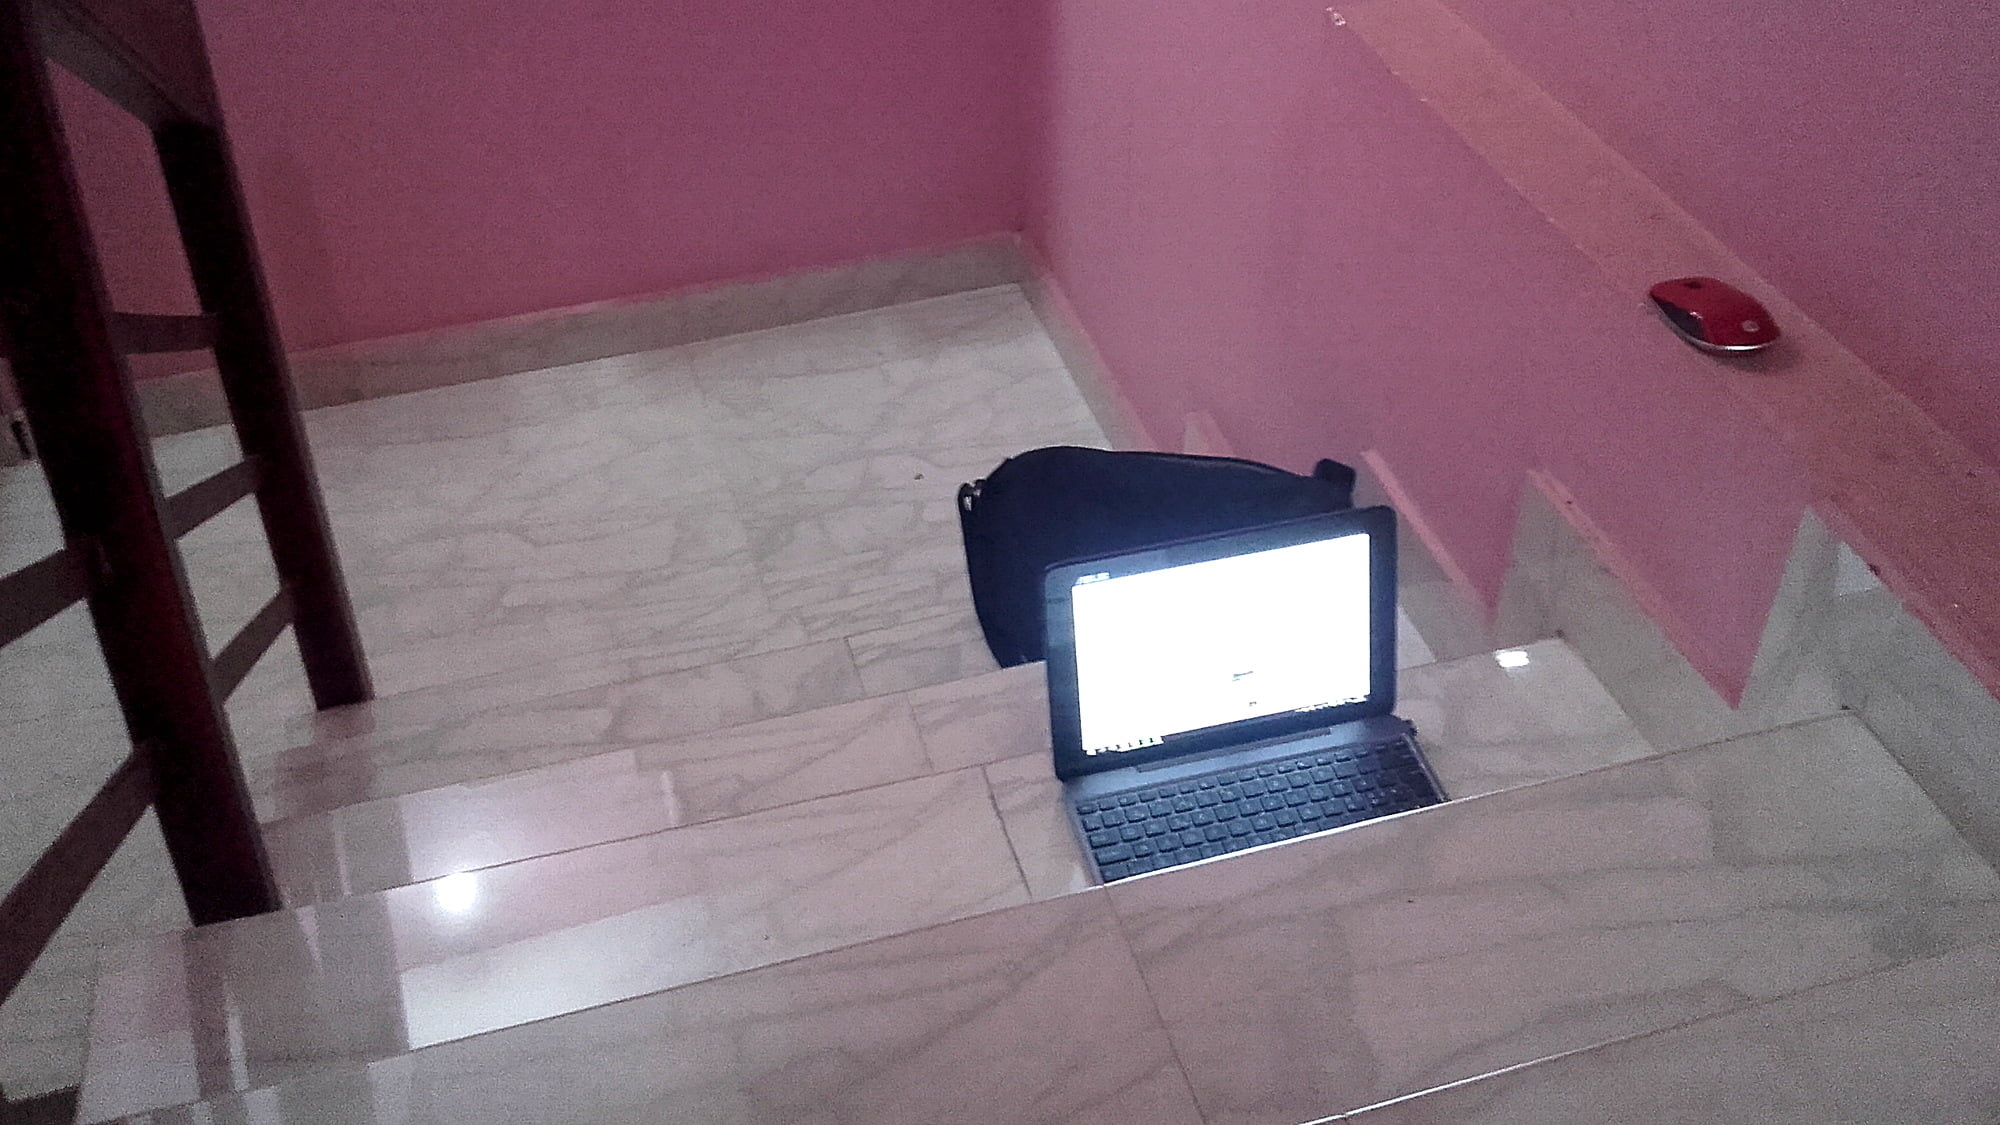 A laptop on a dark hotel stairway.